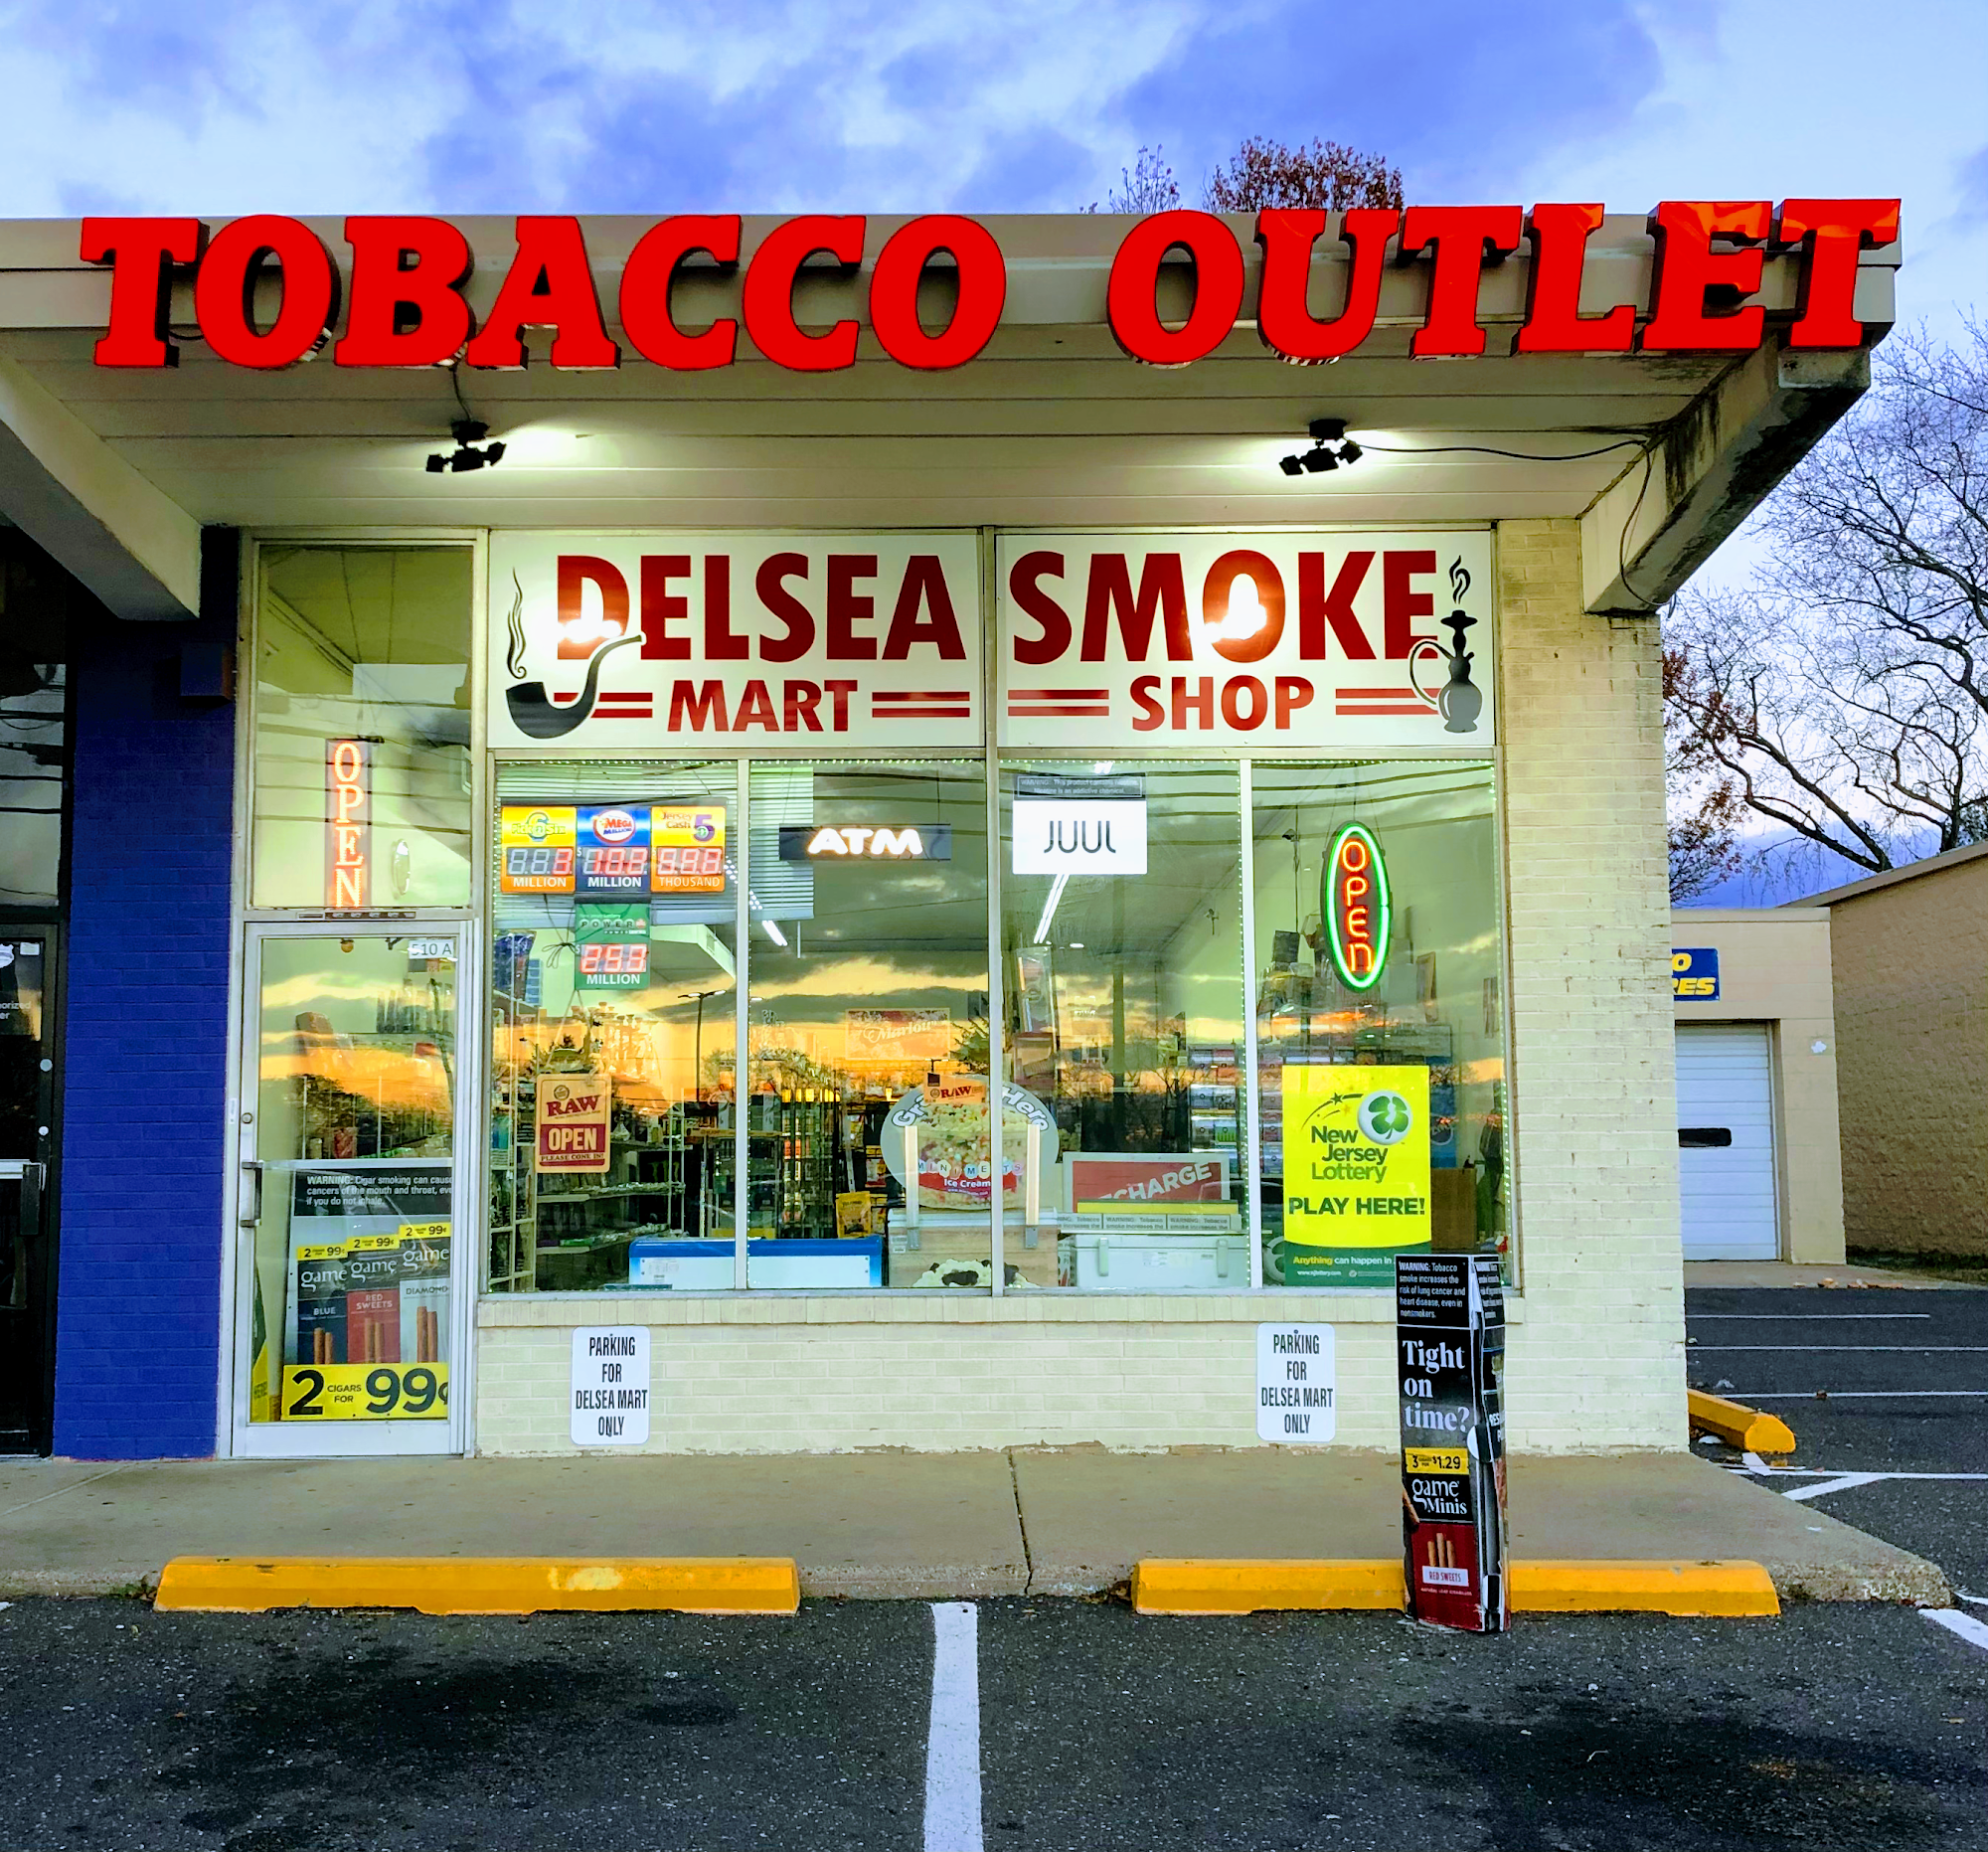 Delsea Smoke Shop